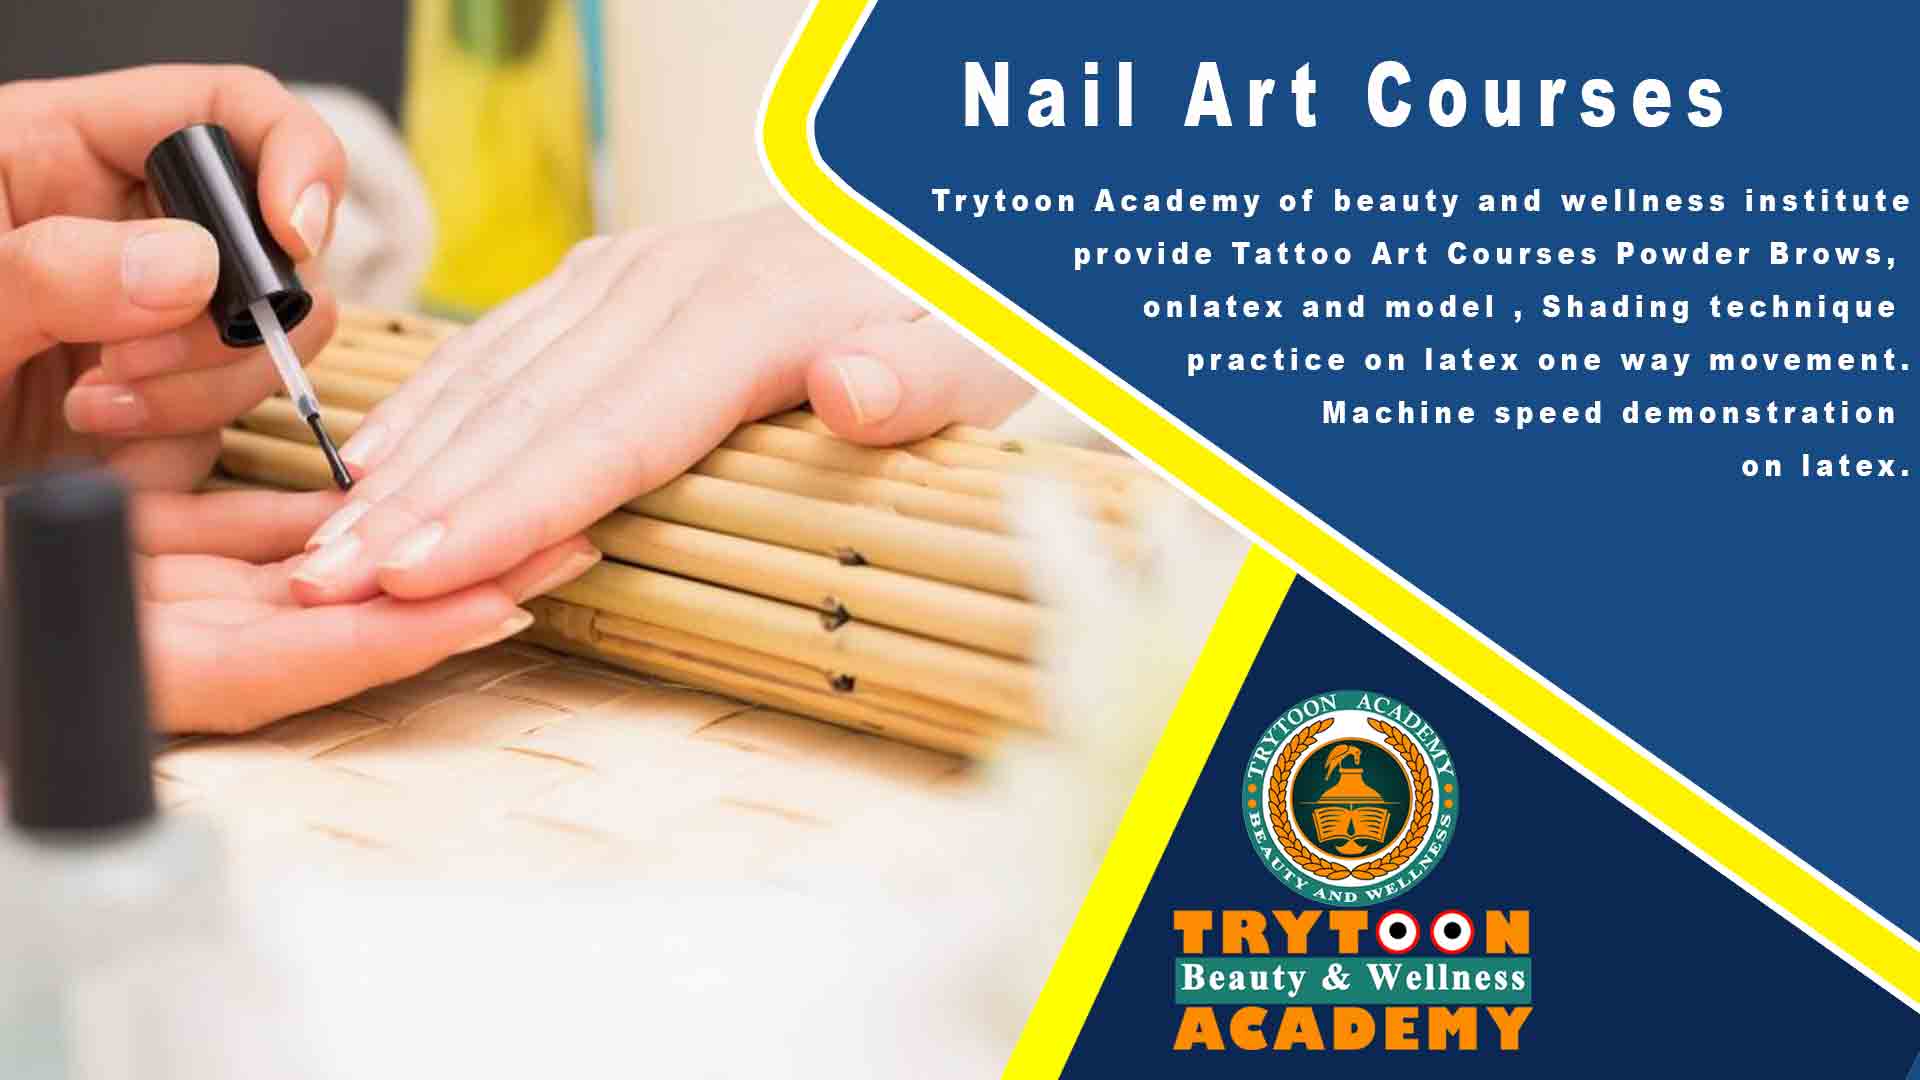 4. Nail Art Training in Bangkok at Nail Pro Academy - wide 1